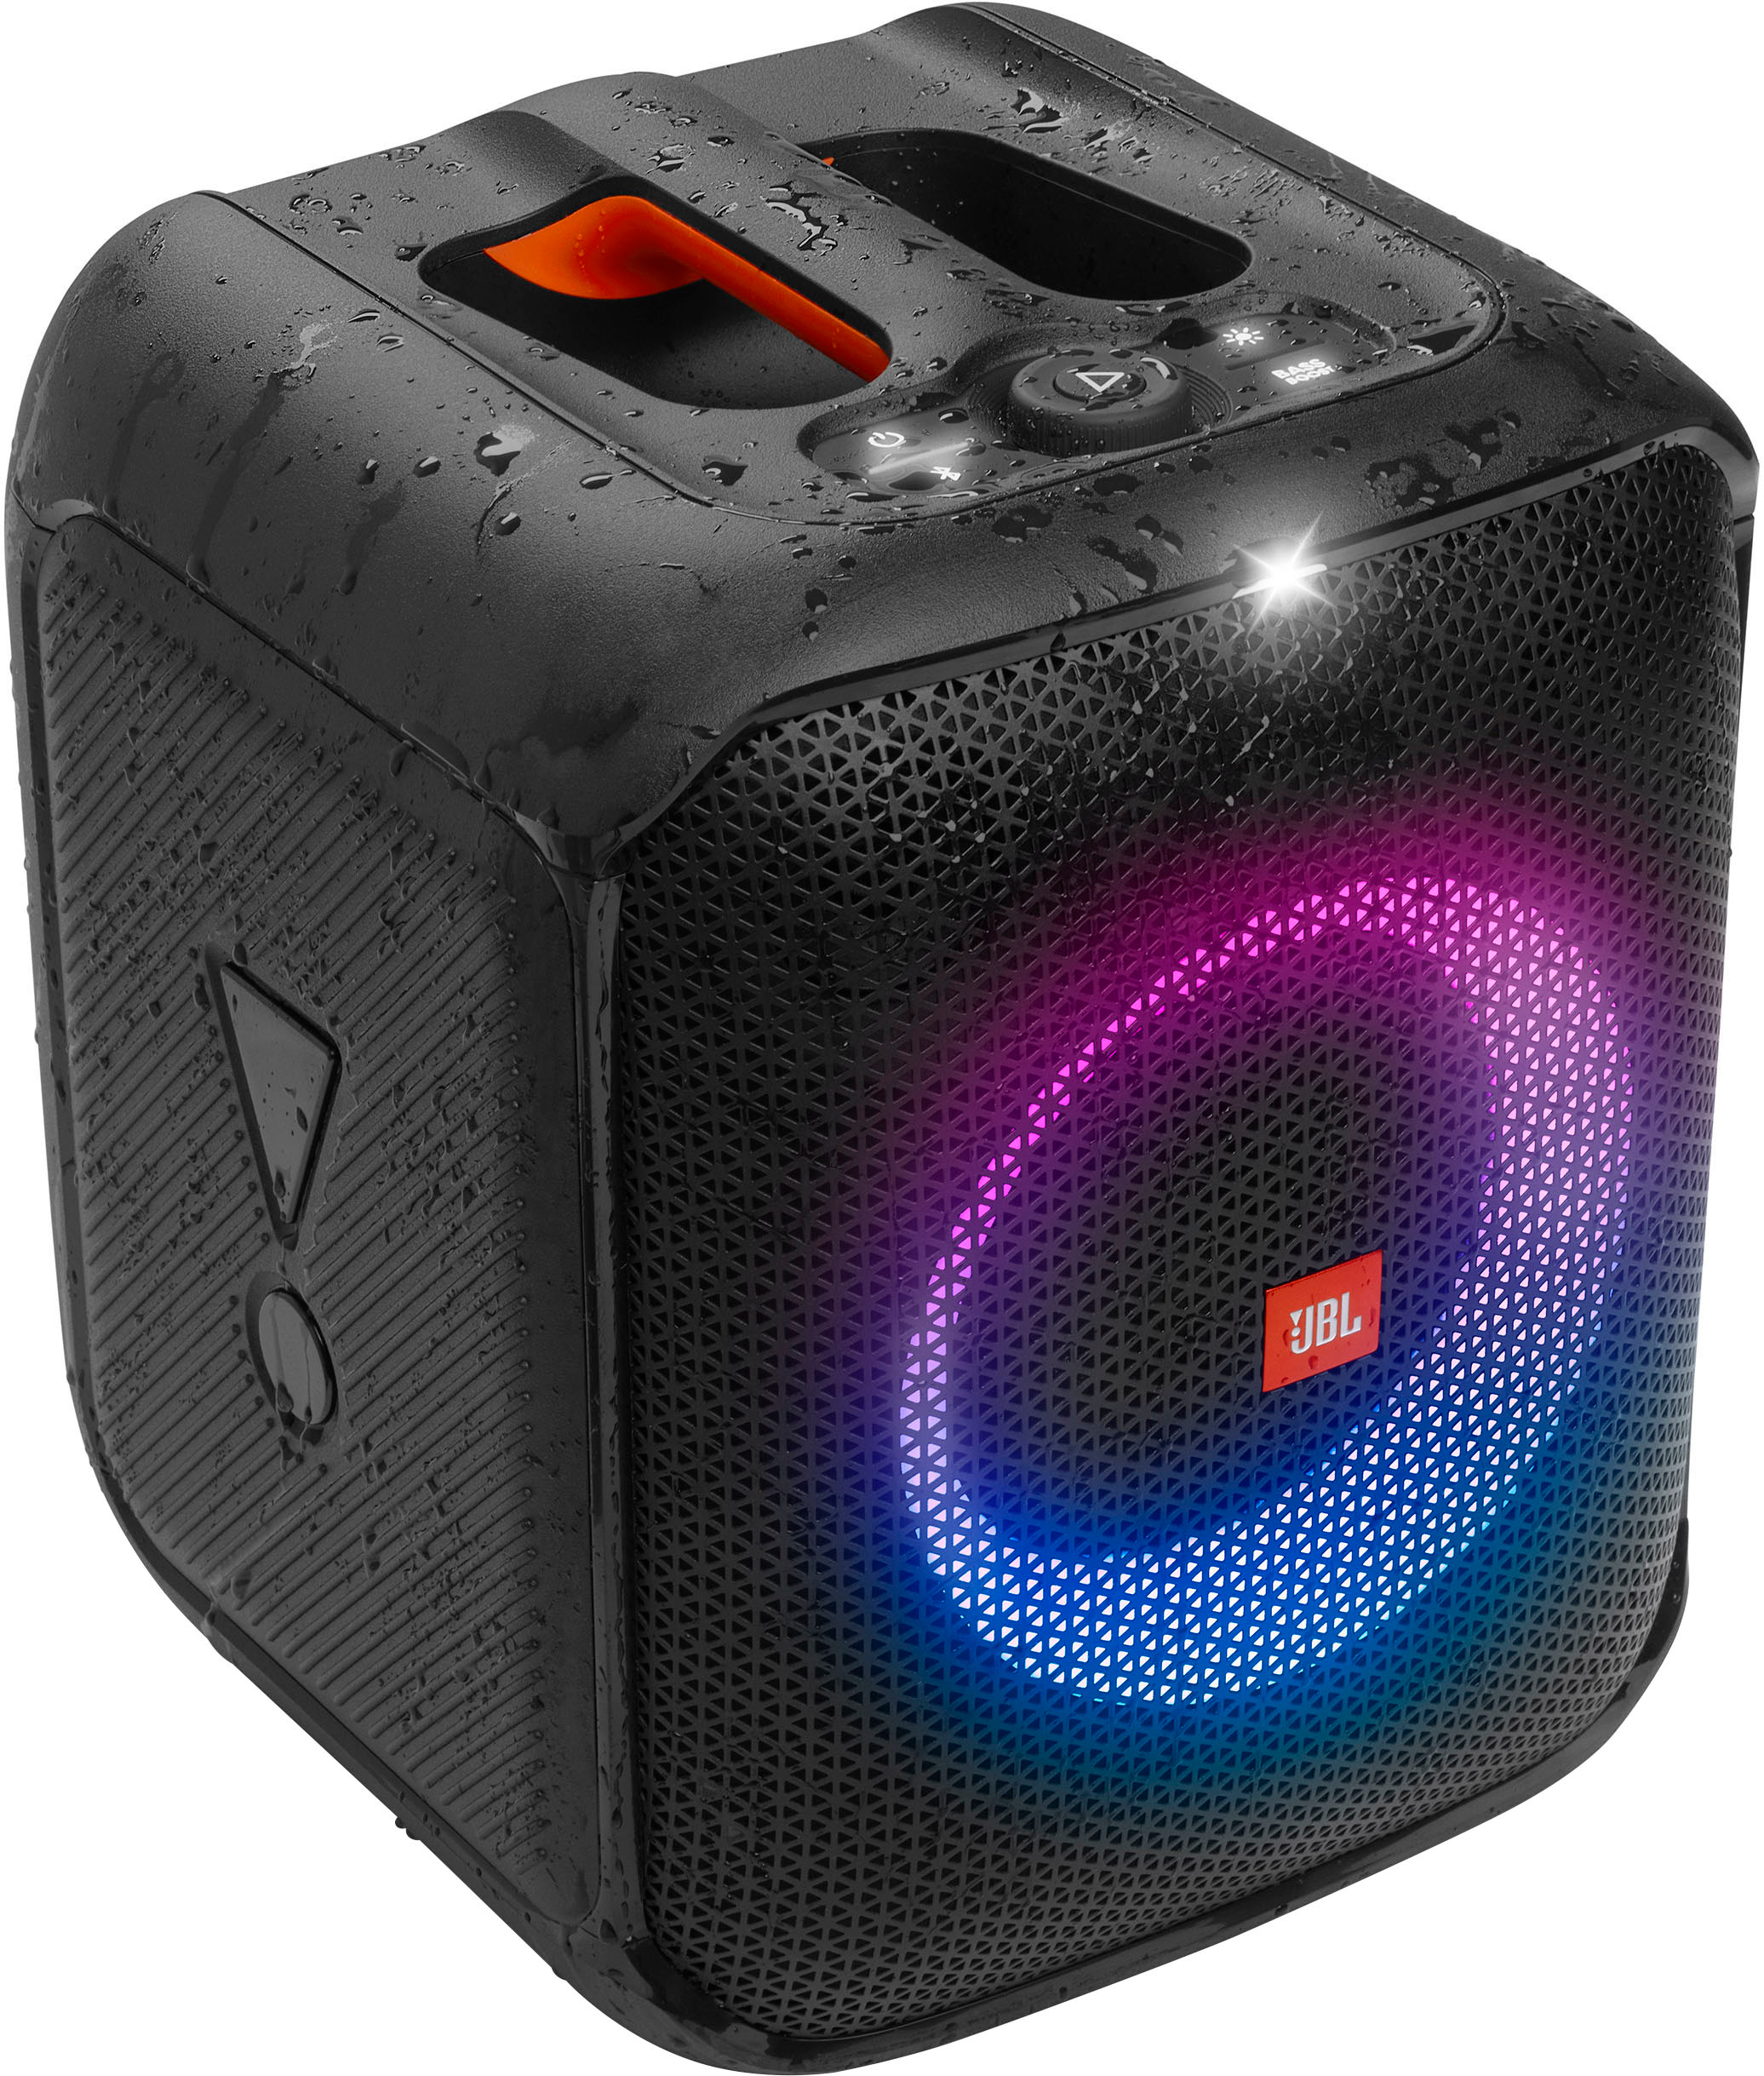 オーディオ機器 スピーカー JBL Partybox Encore Essential Portable Wireless Party Speaker 